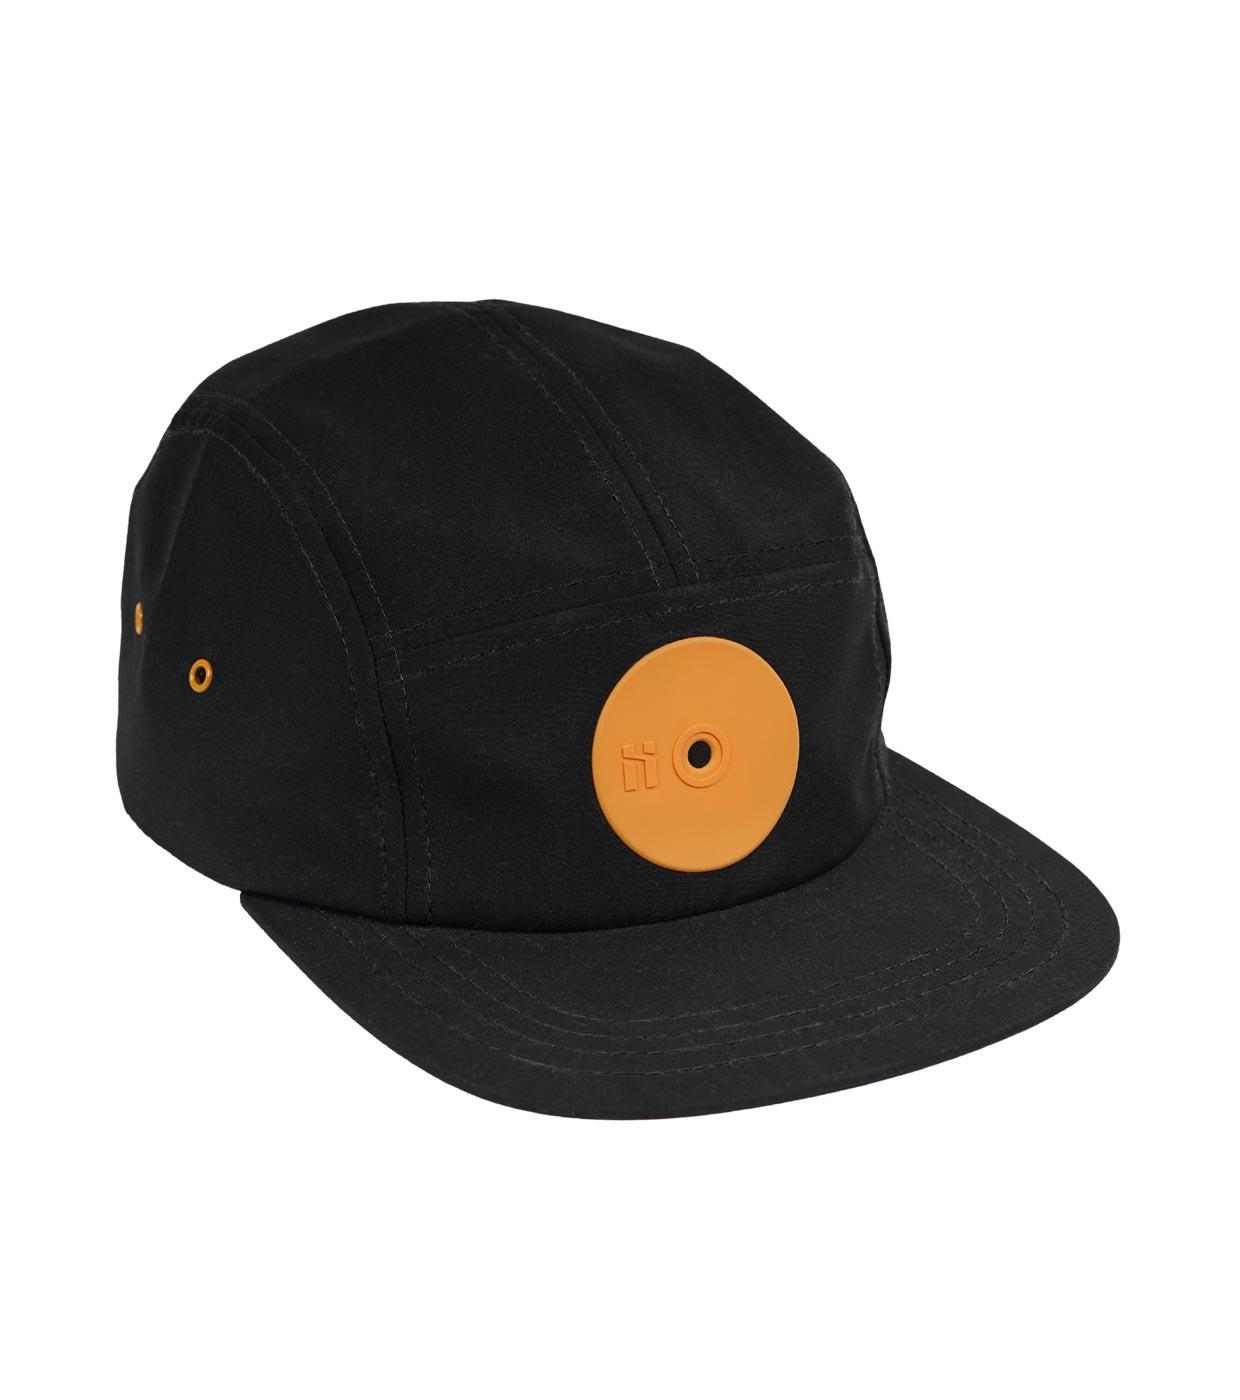 Fat Cap Logo - Mr. Serious fat cap series, Orange medium fat cap. Black 5 panel ...